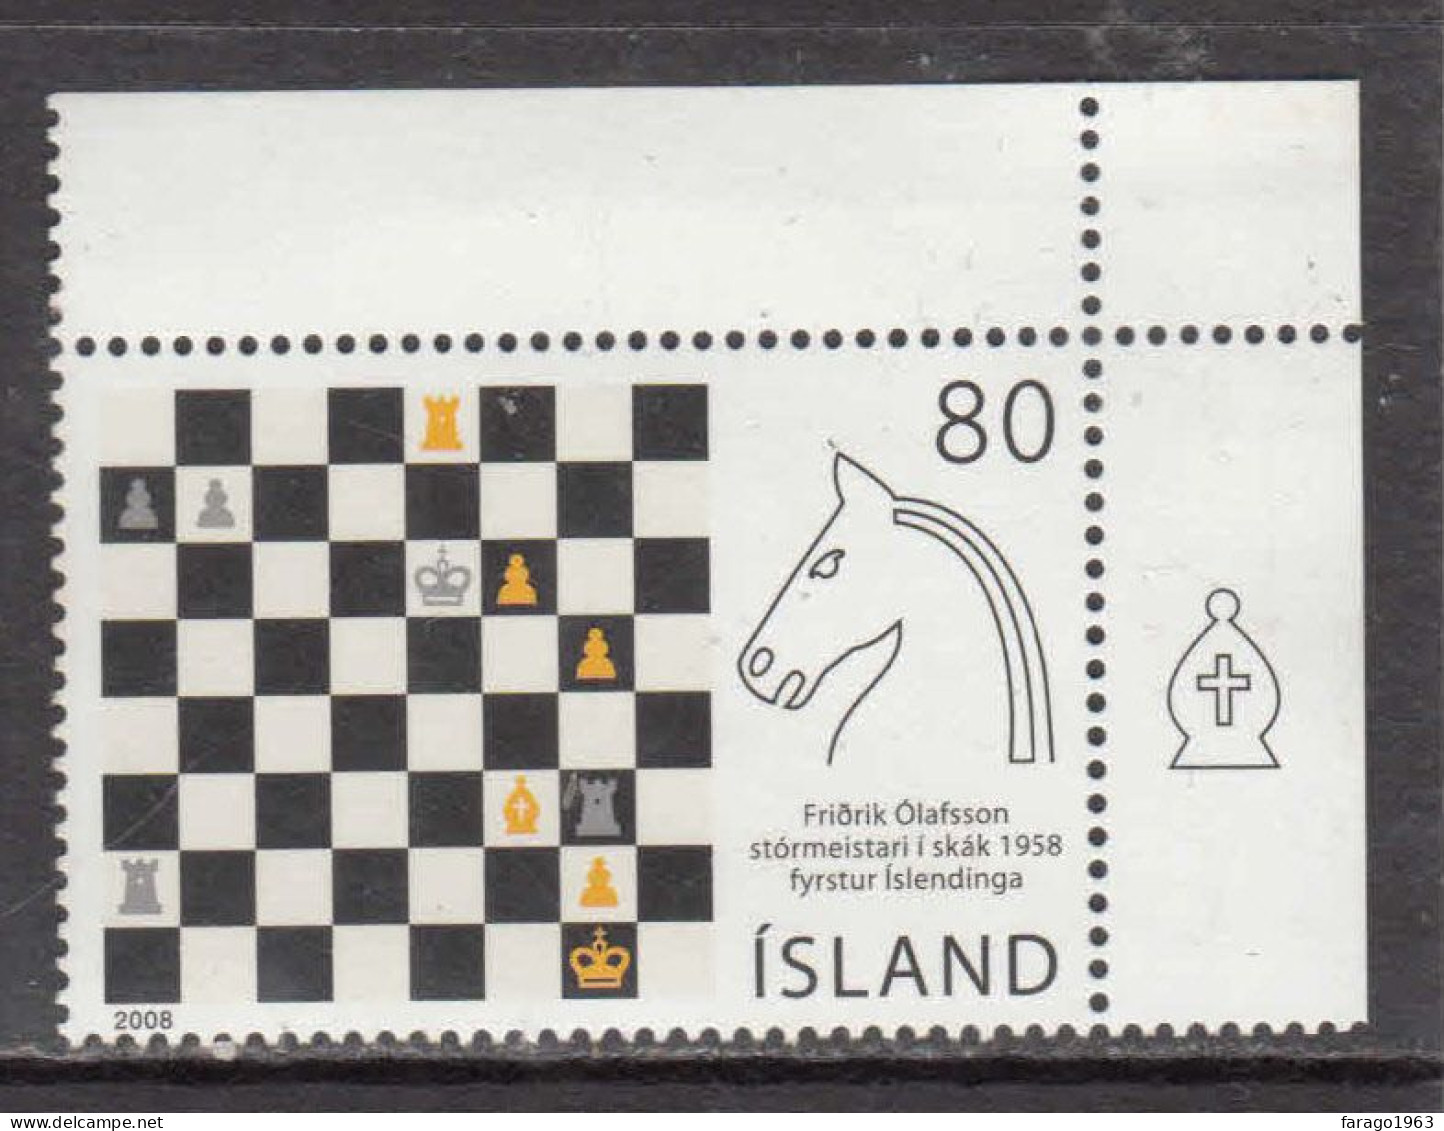 2008 Iceland Chess Echecs Complete Set Of 1 MNH - Ongebruikt